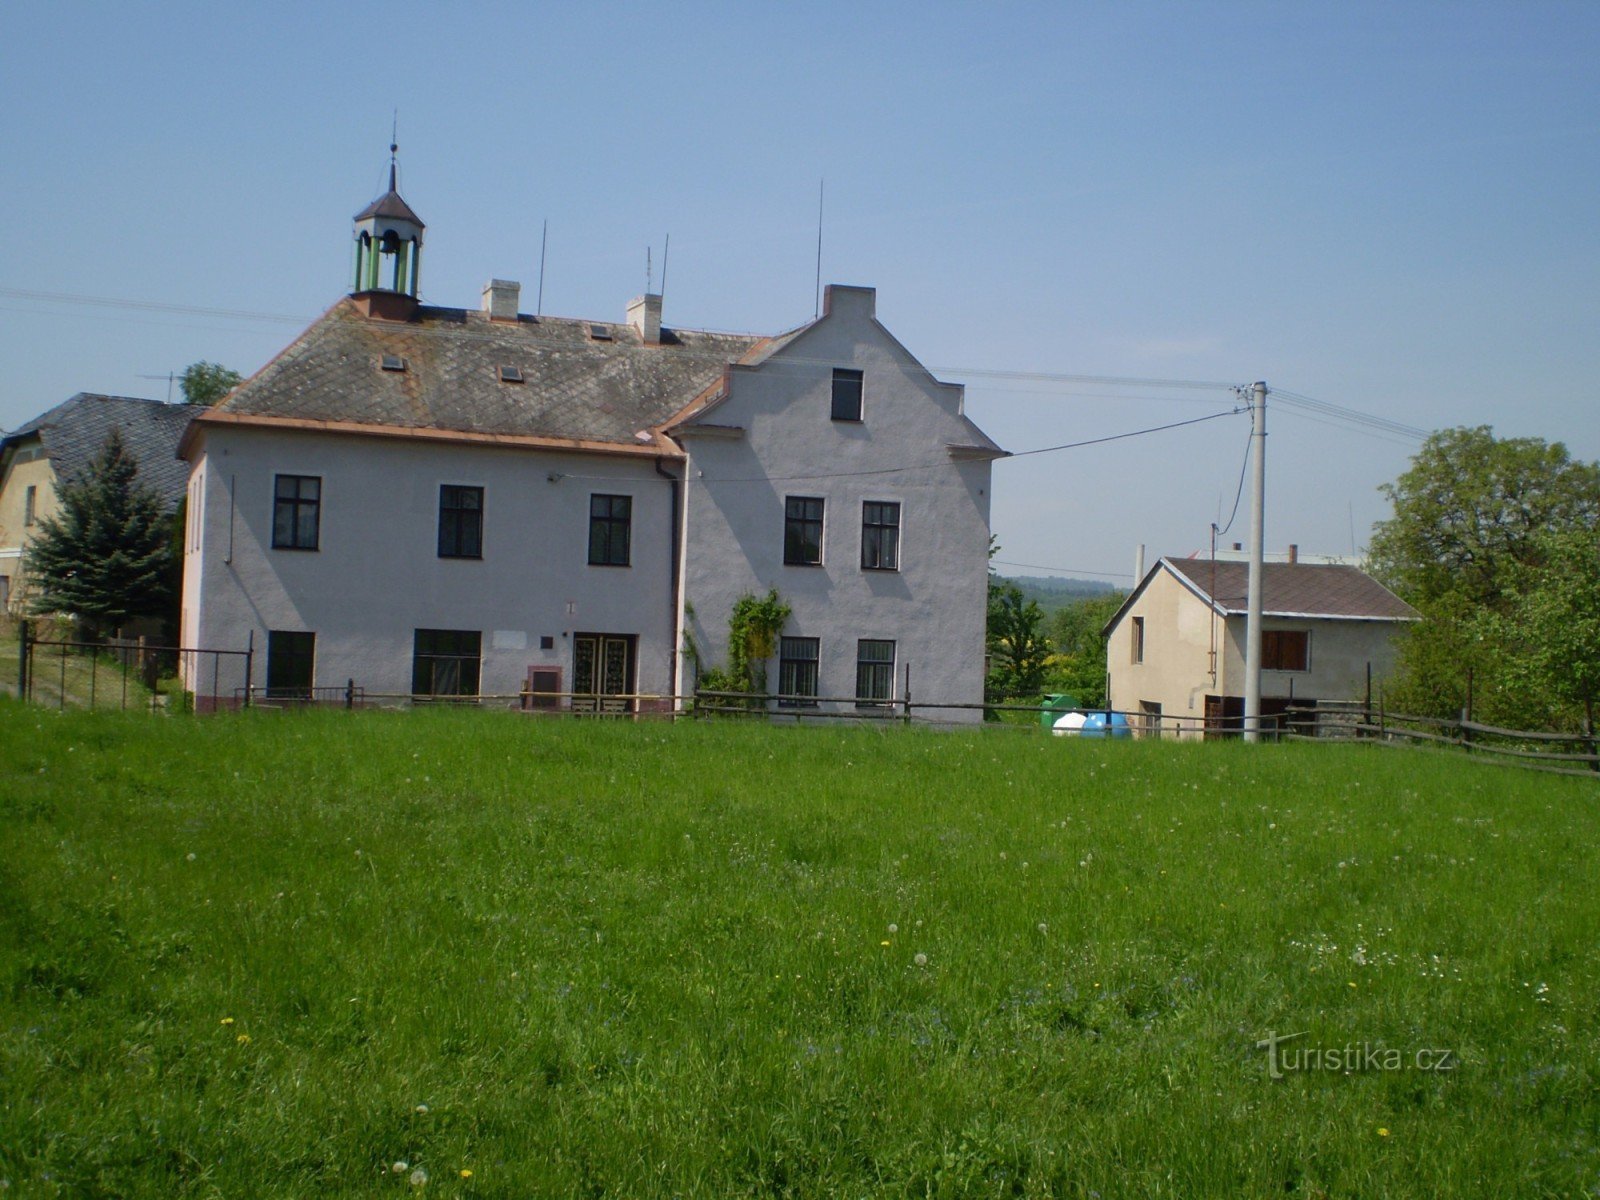 Casa da comunidade, originalmente uma antiga escola